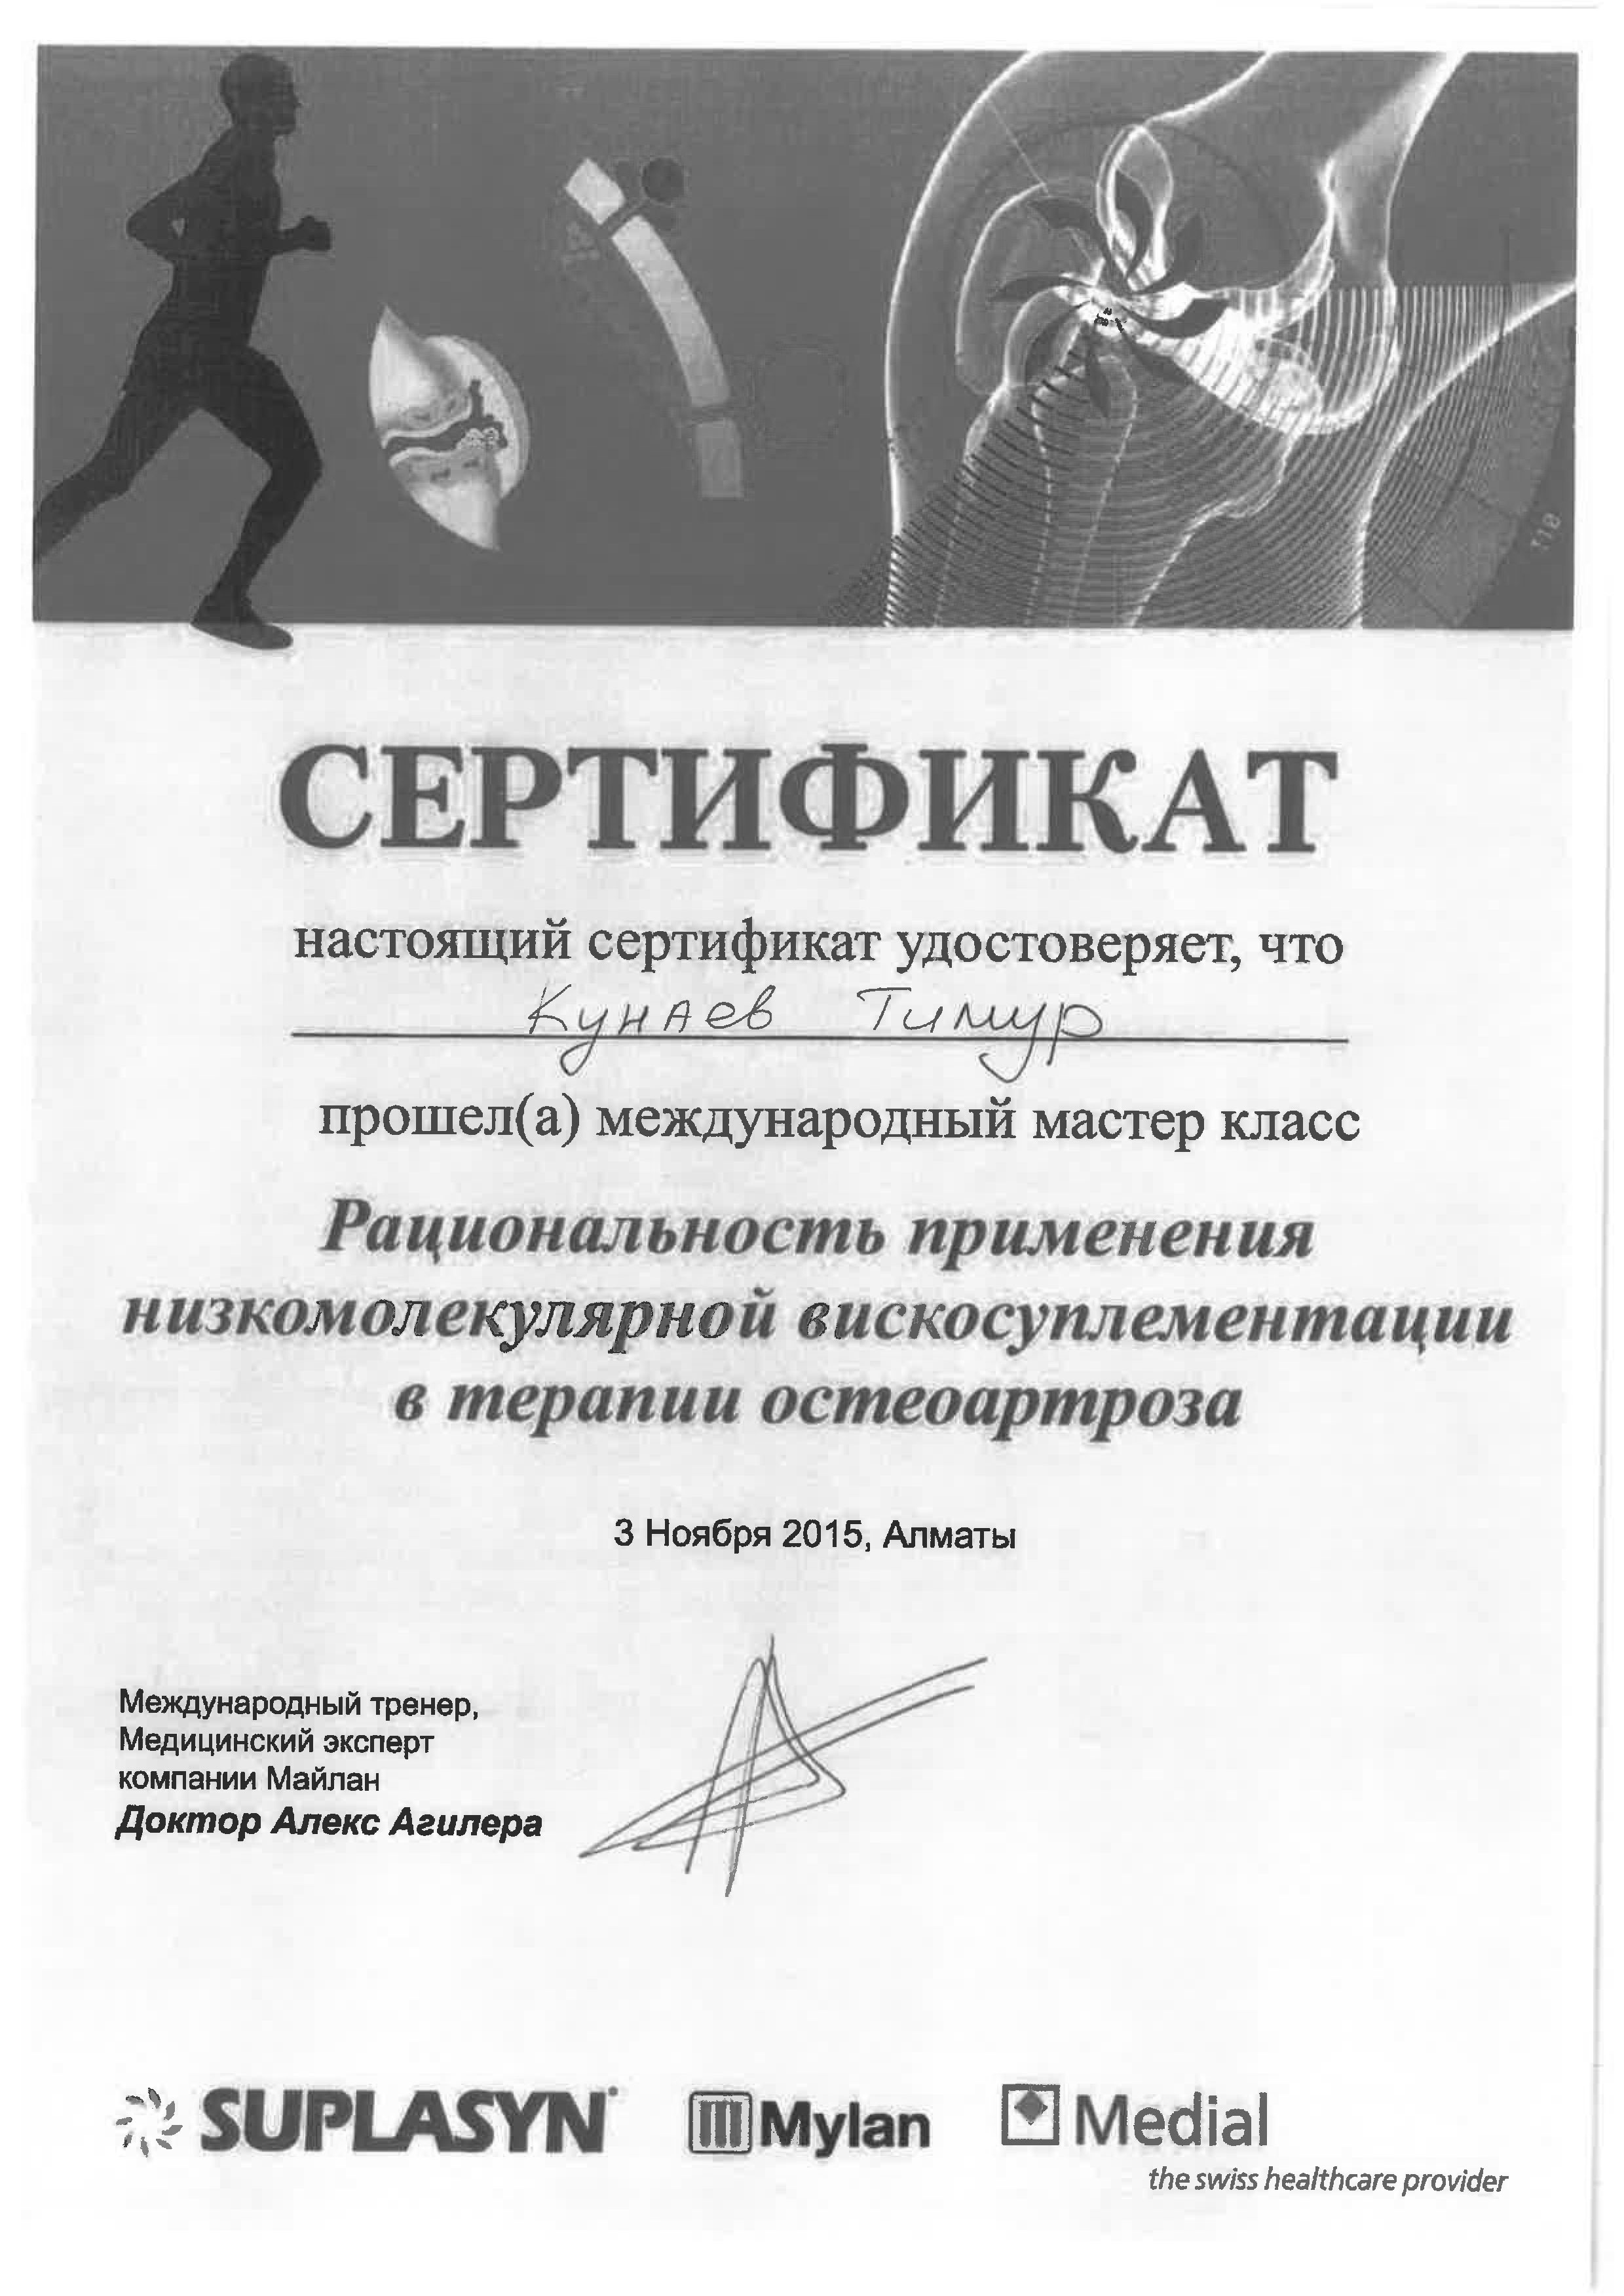 Сертификат Кунаев Тимур Иршатович 7